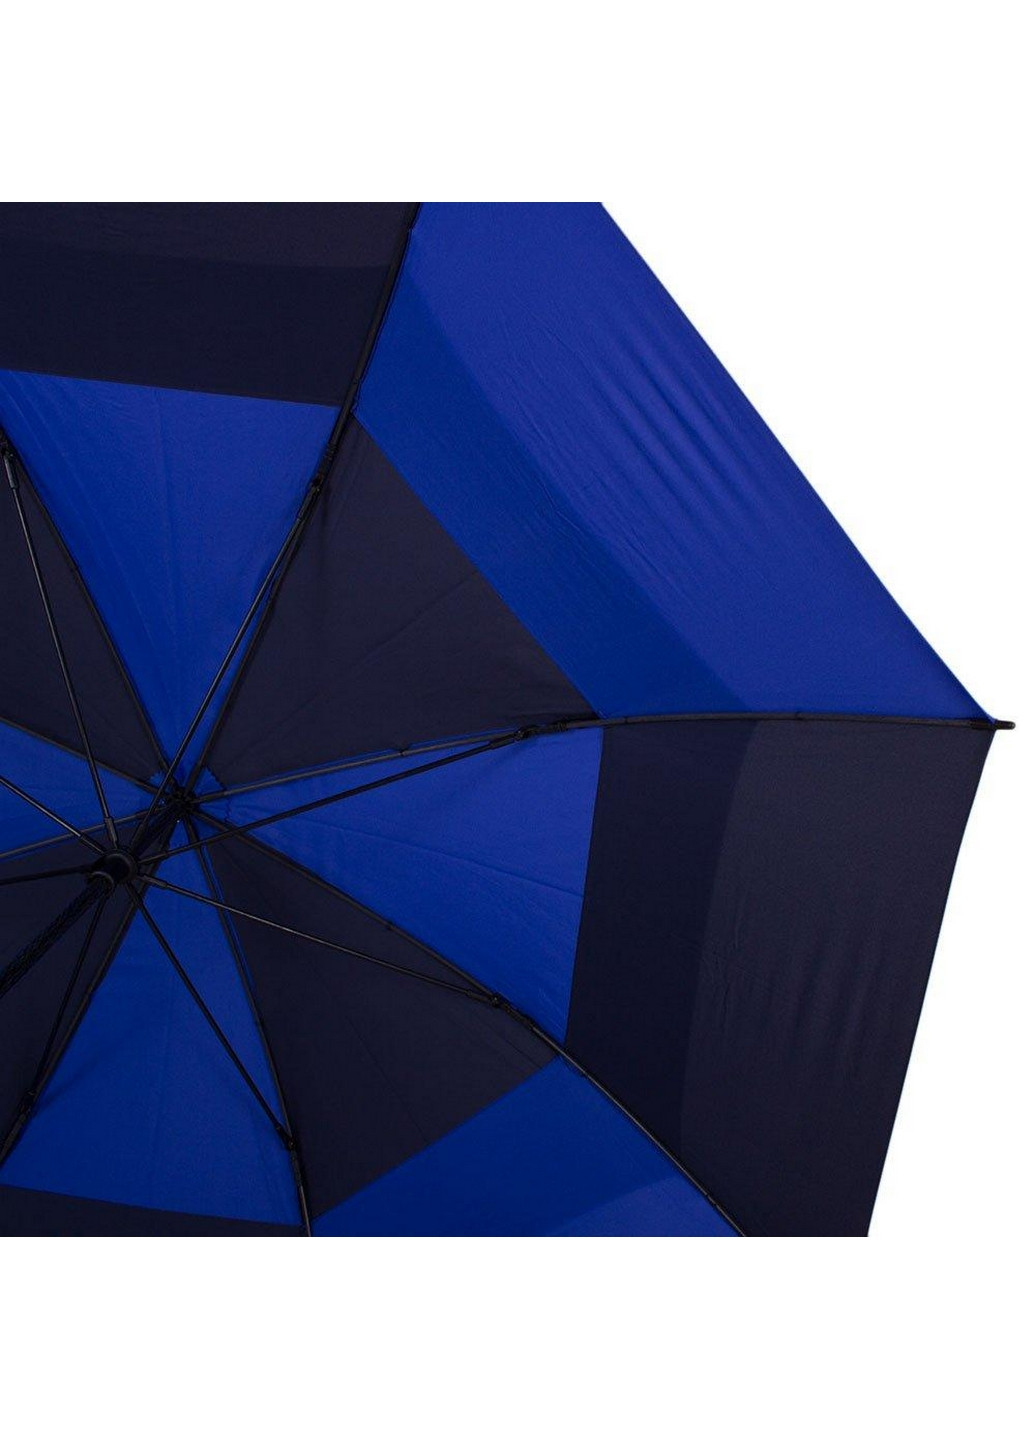 Мужской зонт-трость механический 130 см Fulton (260329754)